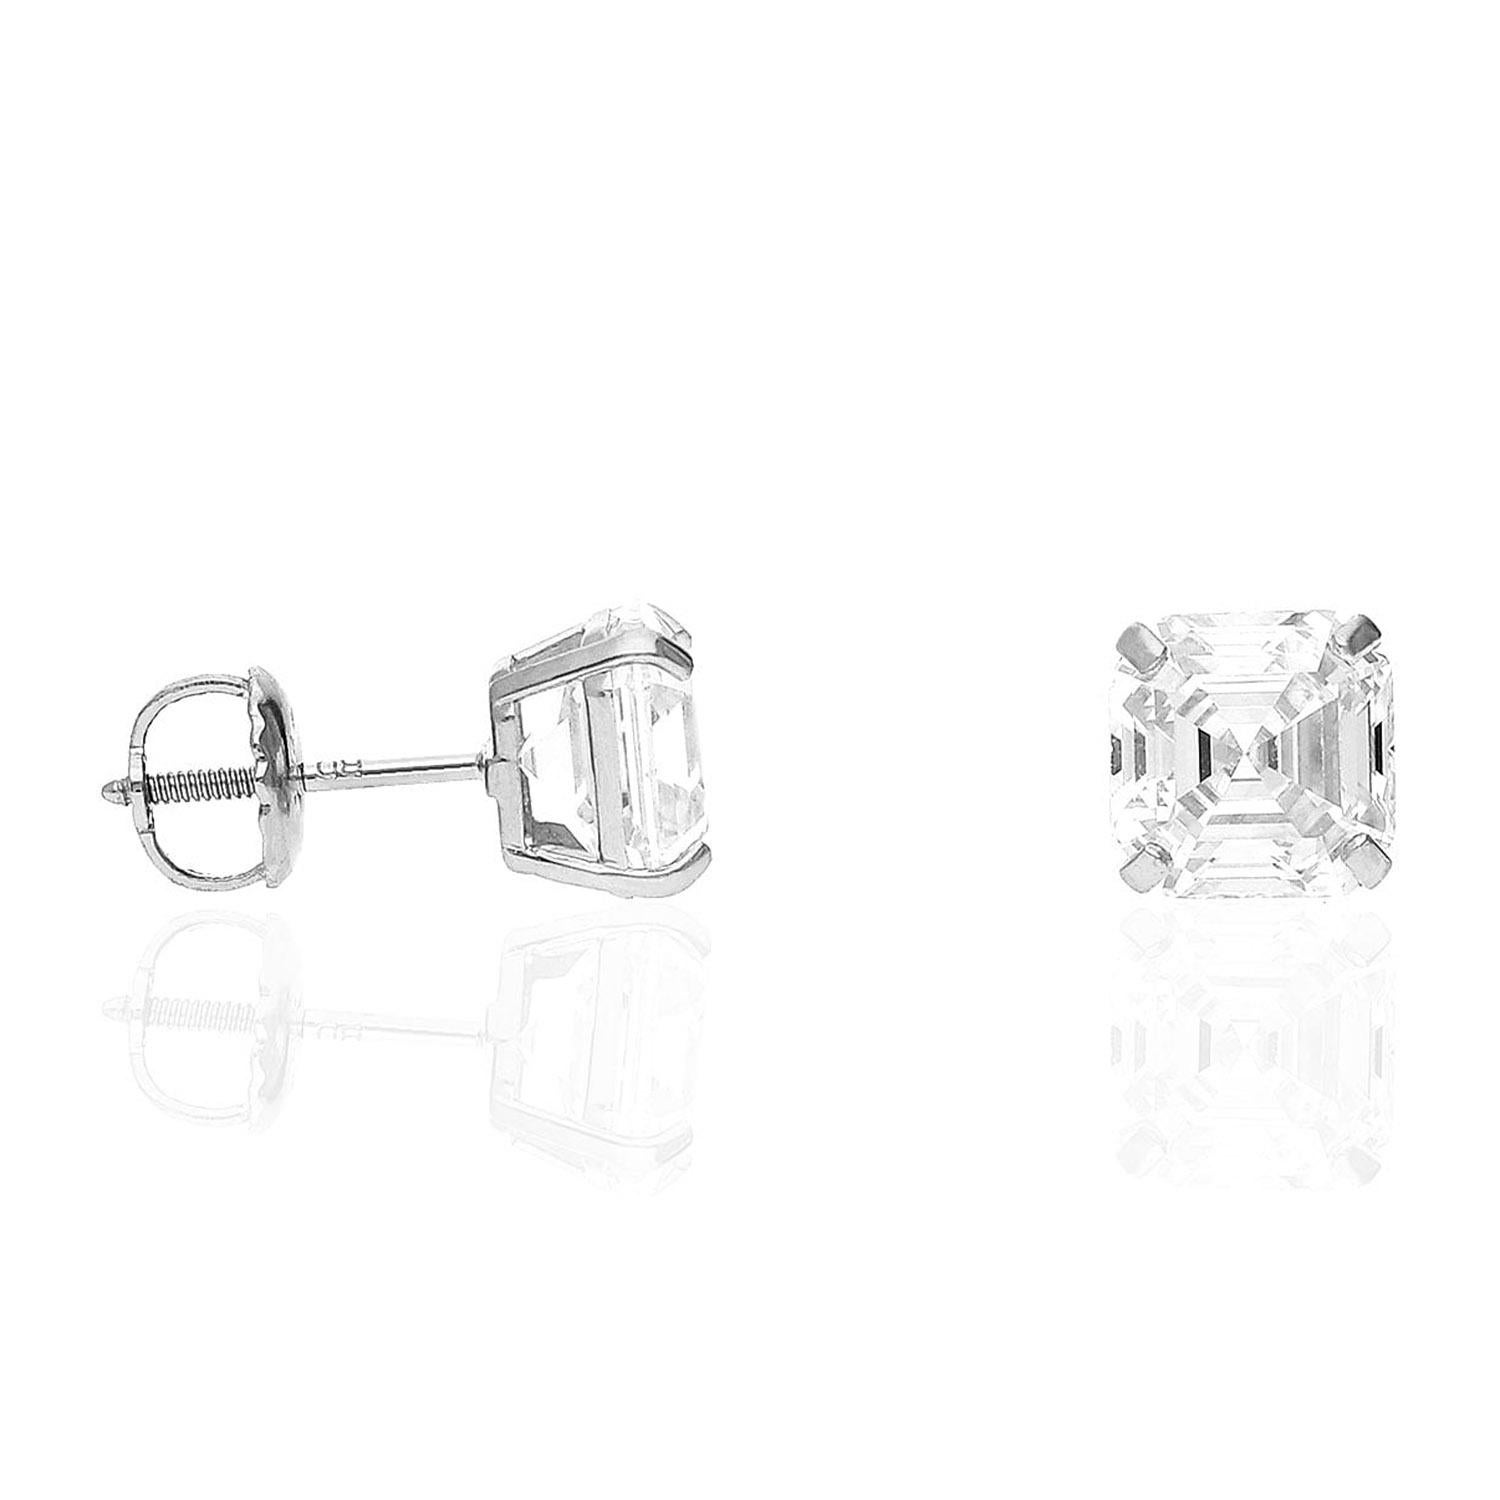 Ein exquisites, GIA-zertifiziertes 6,09 Karat schweres Paar von Diamanten im Asscher-Schliff ist wunderschön raffiniert und außergewöhnlich sauber mit einer lupenreinen VVS1-Klarheit! Die Diamanten sind mit D/F für die Farbe eingestuft, und sie sind